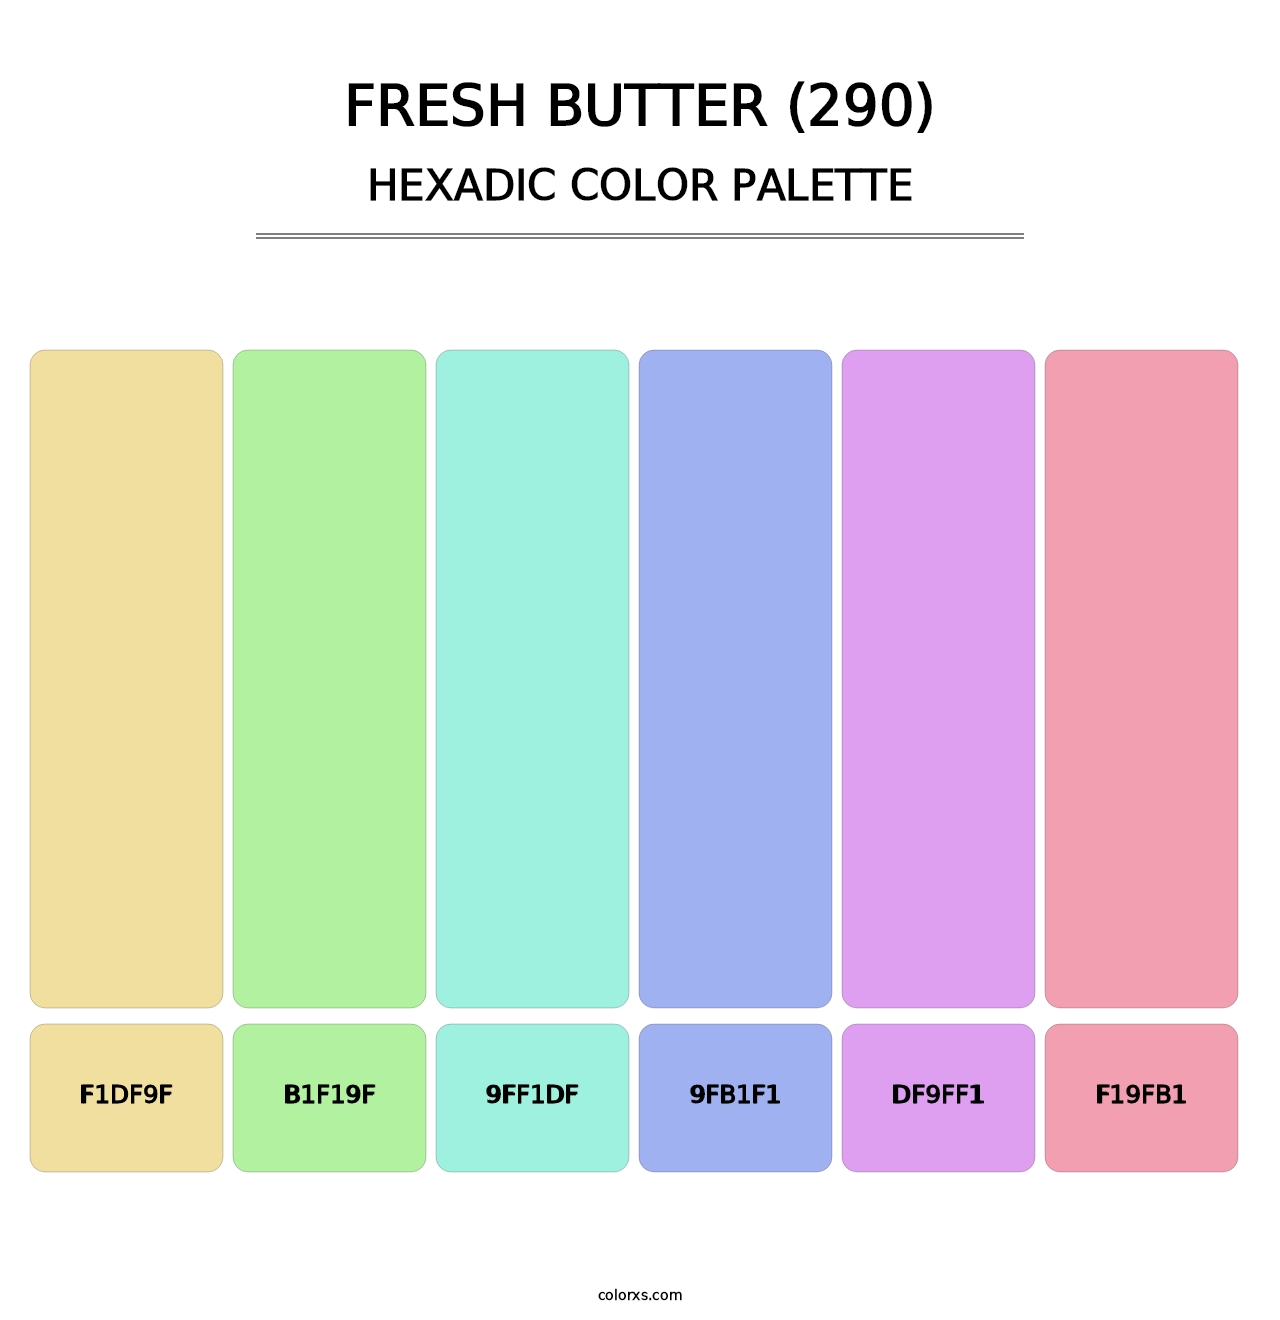 Fresh Butter (290) - Hexadic Color Palette